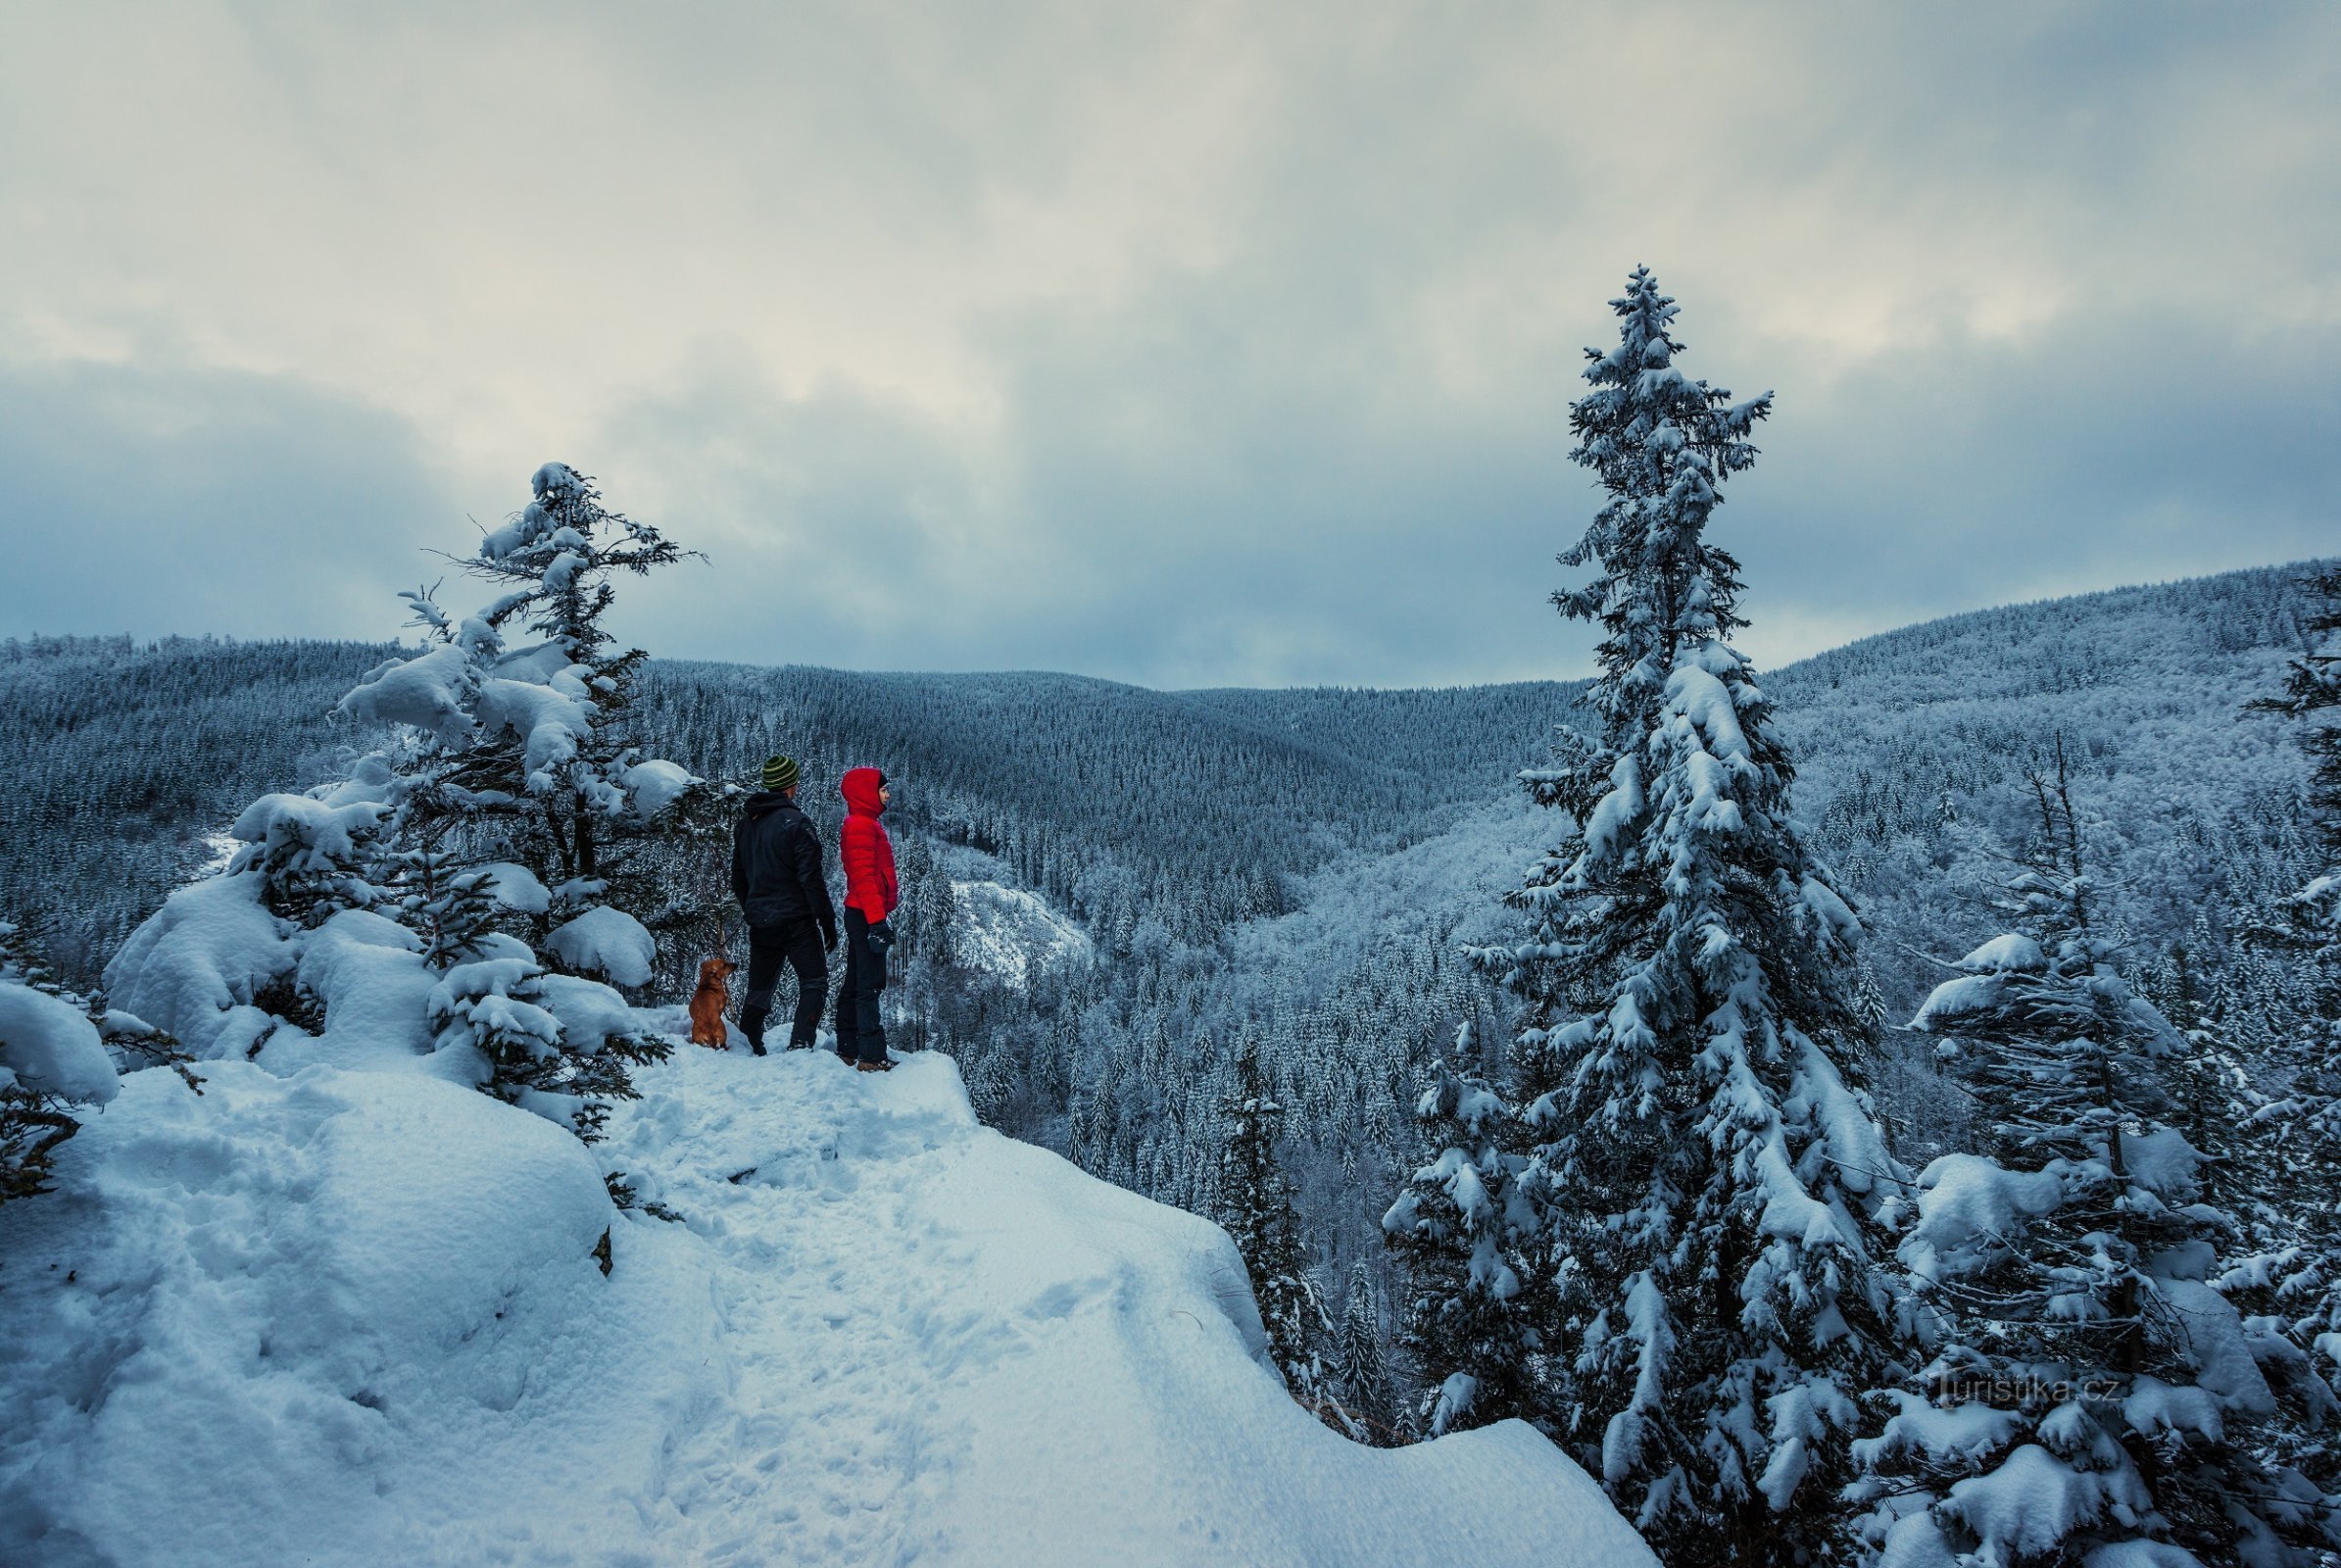 Pas seulement des skis ou des skis de fond - la randonnée hivernale en montagne a sa propre magie !